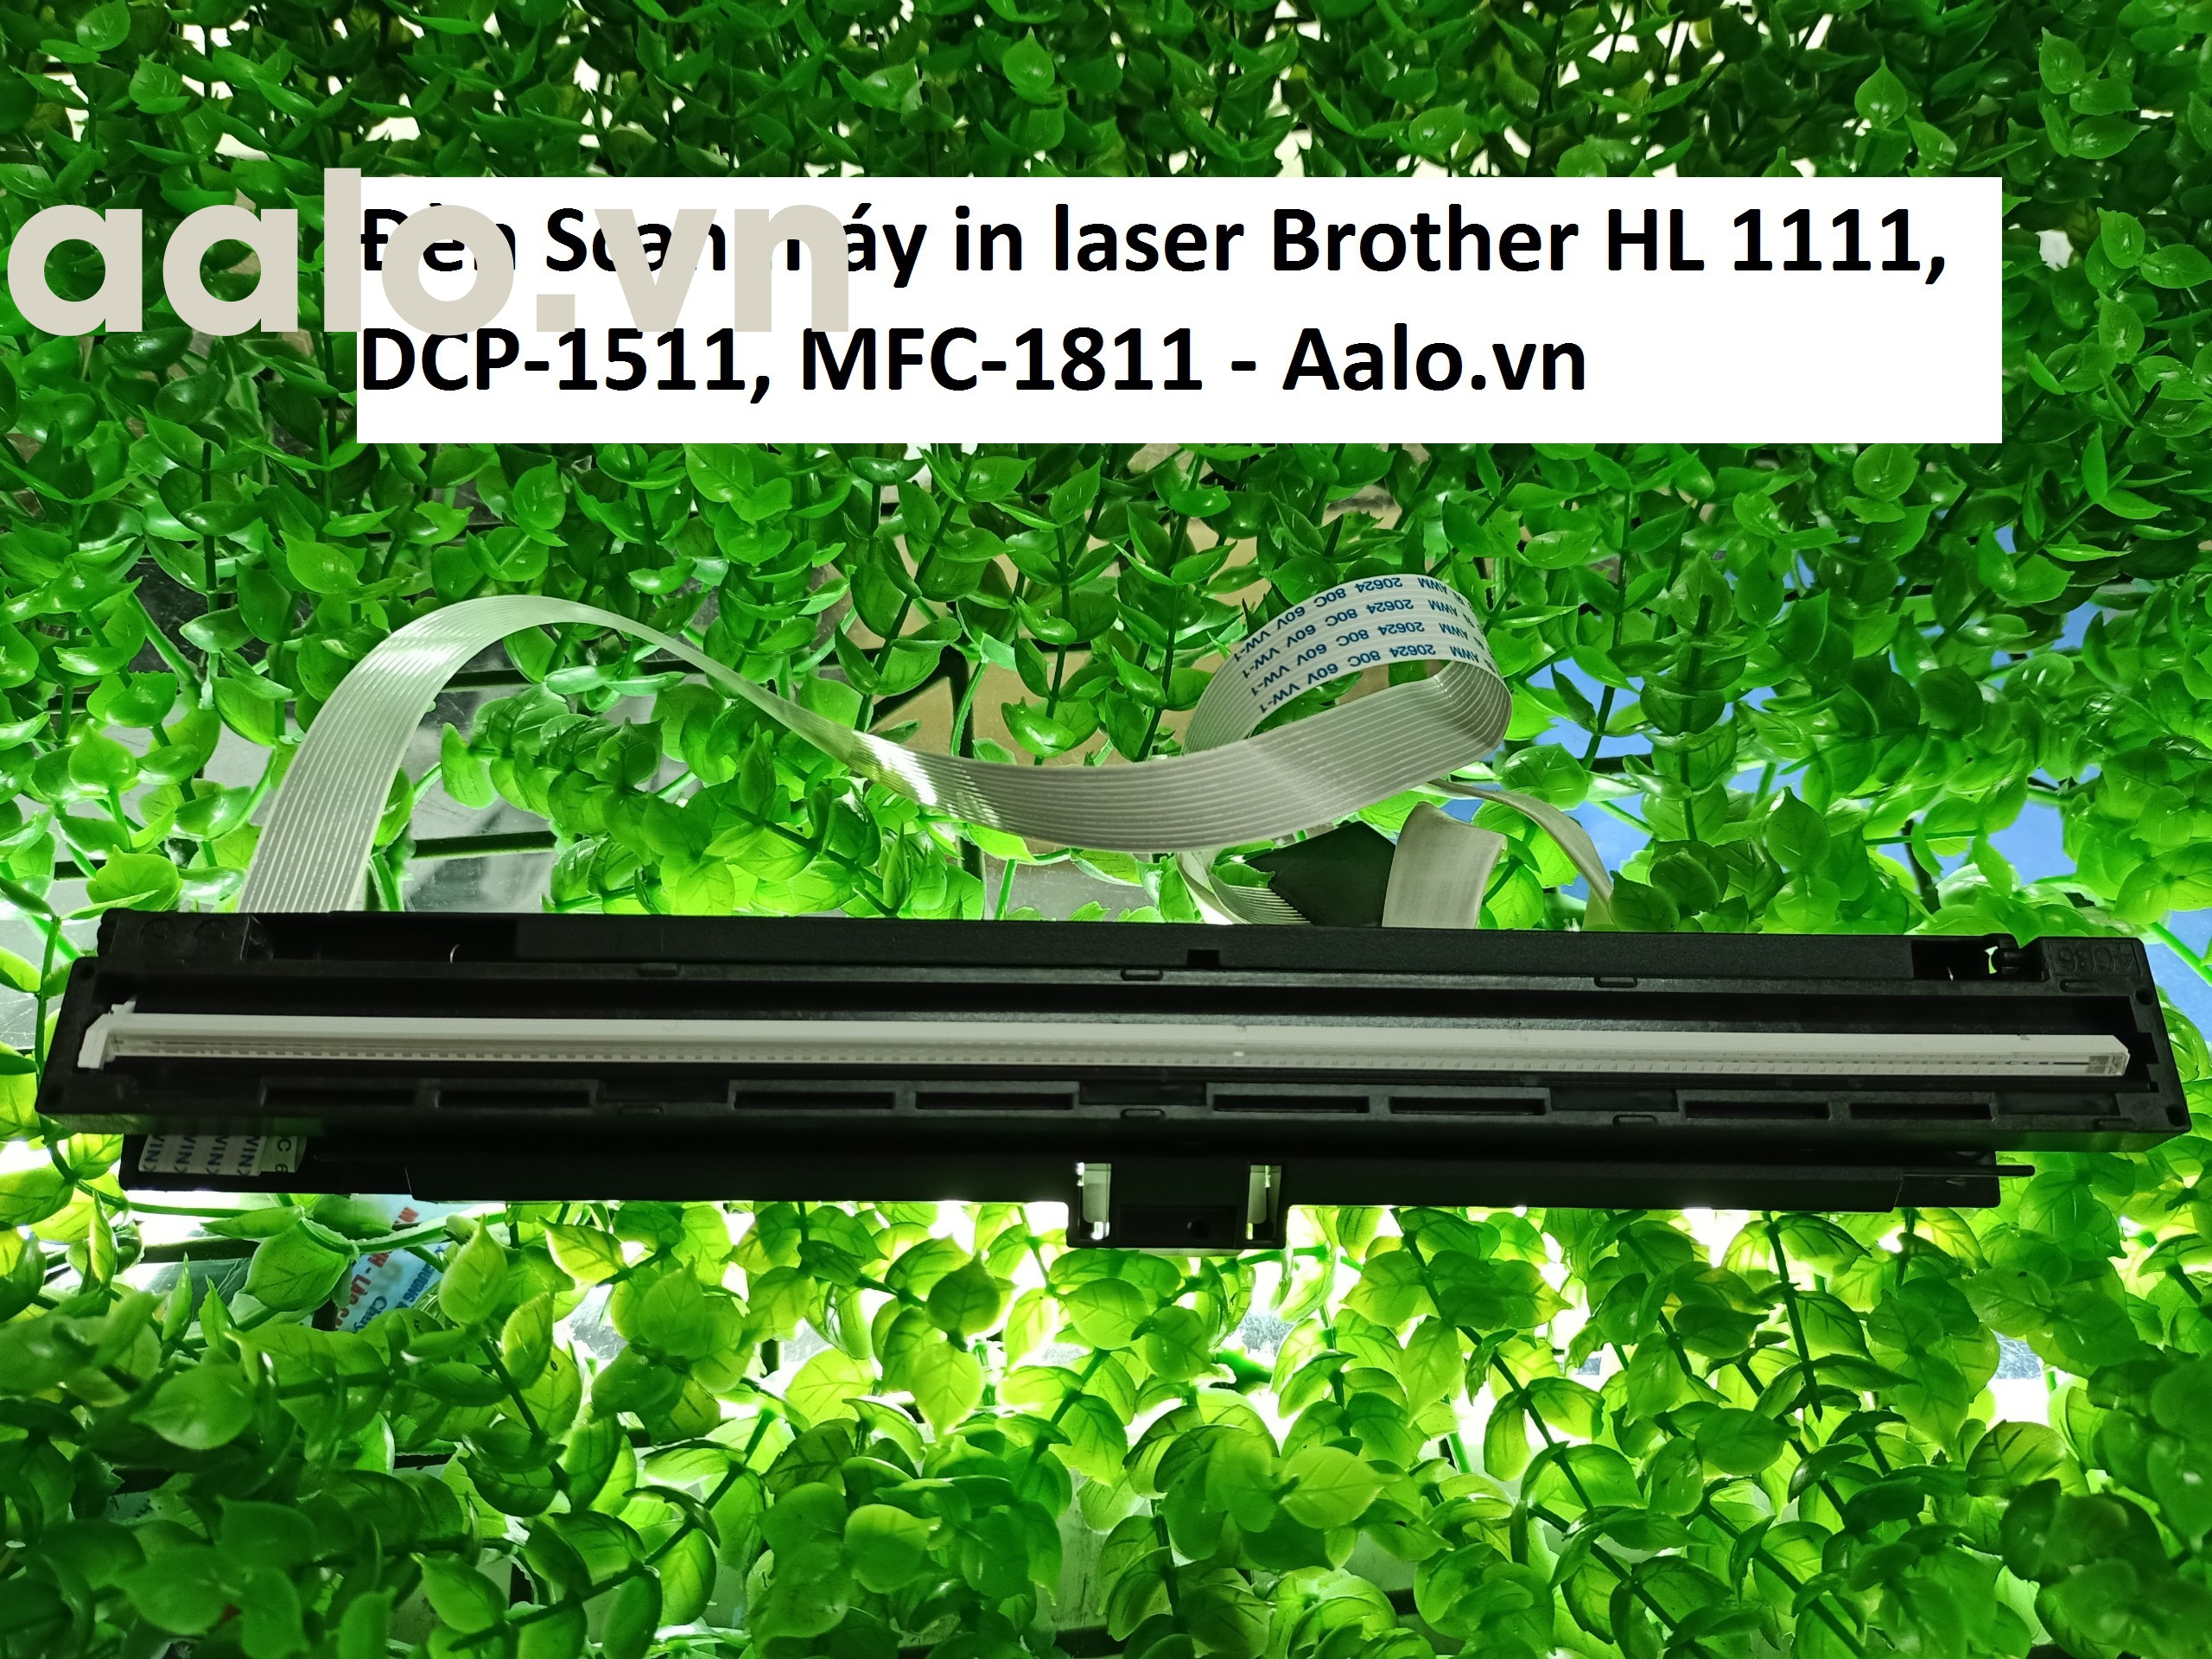 Đèn Scan máy in laser Brother HL 1111, DCP-1511, MFC-1811